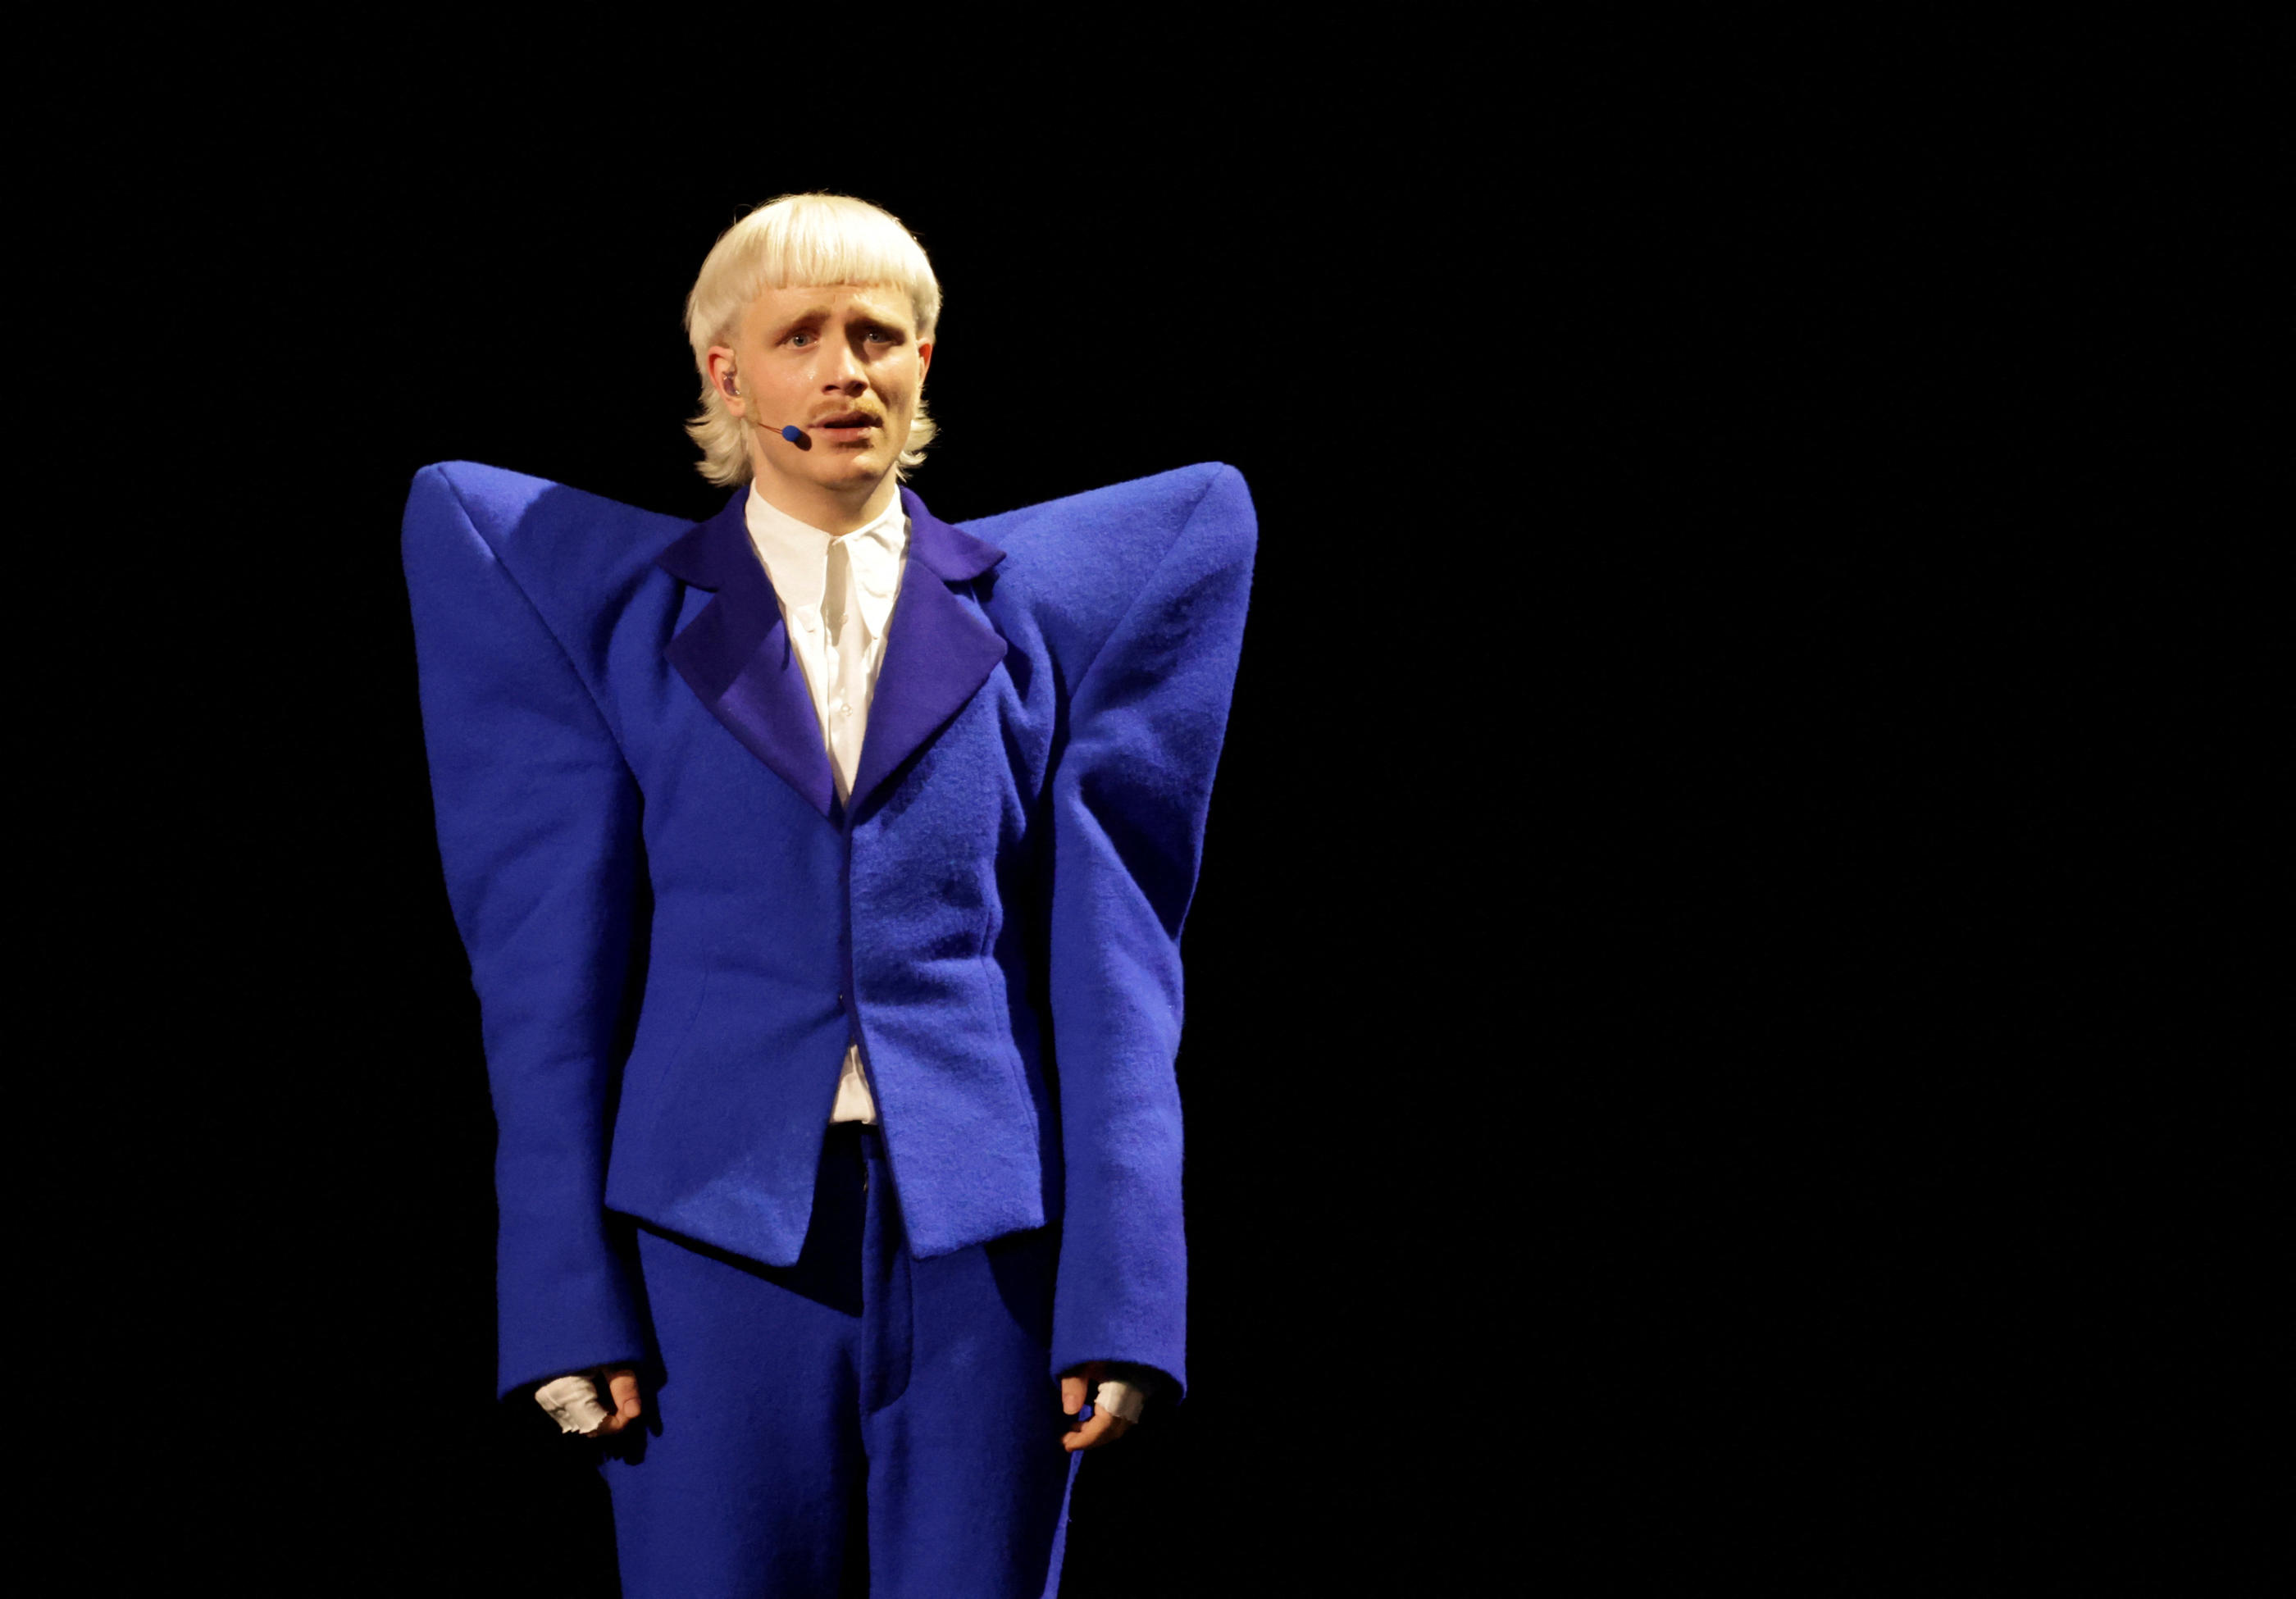 Avec son costume bleu klein aux larges épaulettes et ses cheveux peroxydés, Joost Klein interprétait « Europapa », un hymne à l’Europe et à l’unité. Reuters/Leonhard Foeger